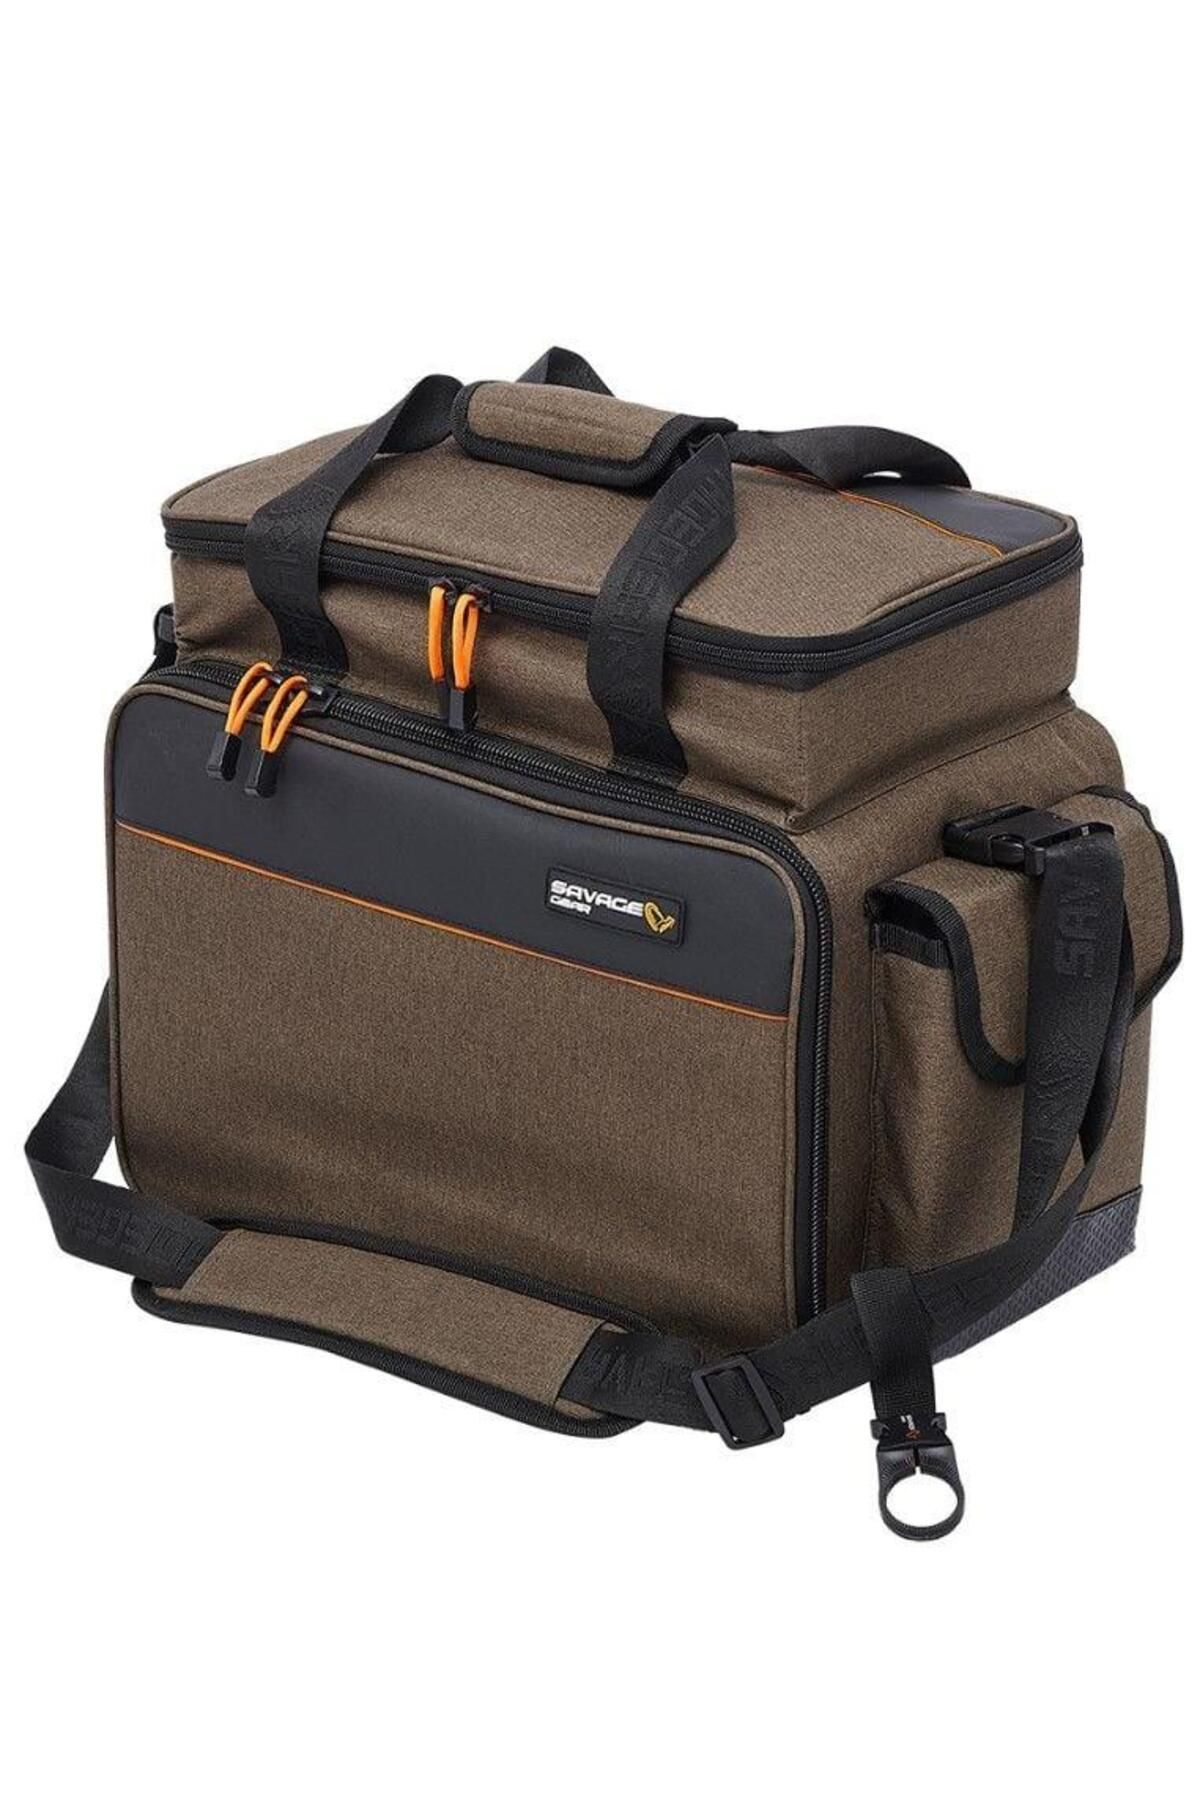 Specialist Lure Bag L 6 Boxes 35X50X25cm 31L_0